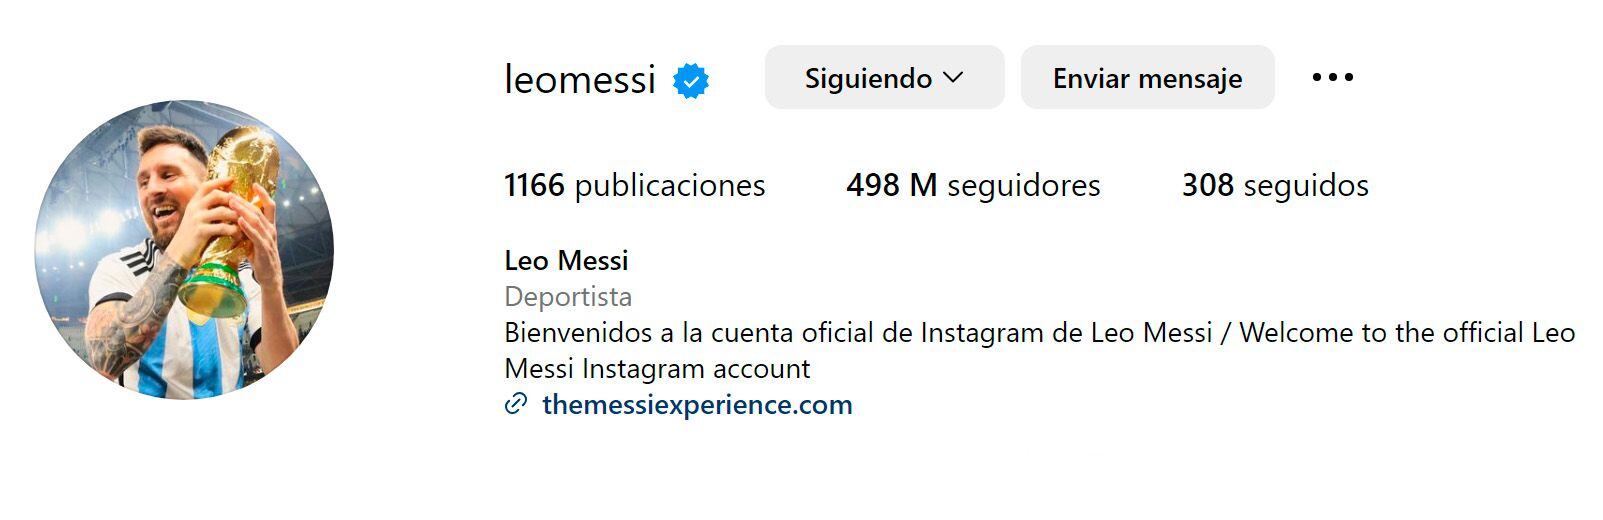 La nueva foto de perfil de Lionel Messi en Instagram